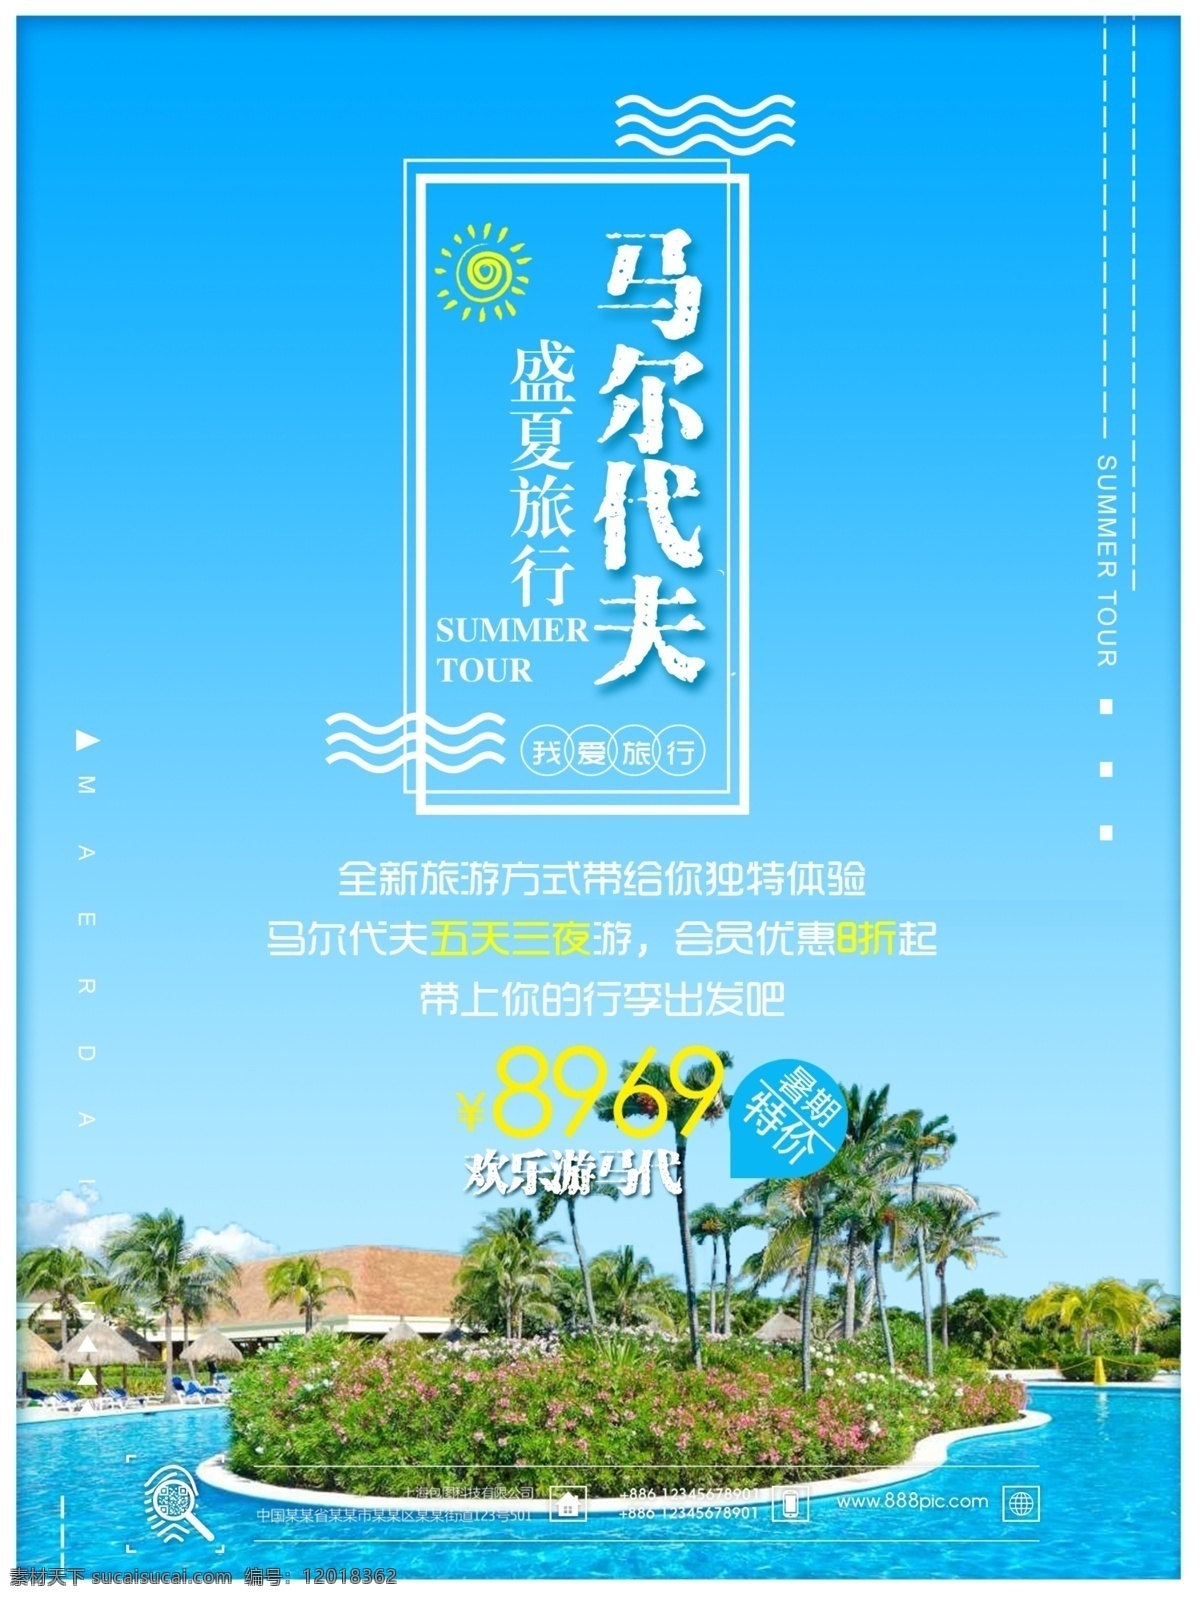 夏日 马尔代夫 旅游 海洋 蓝色 简约 商业 海报